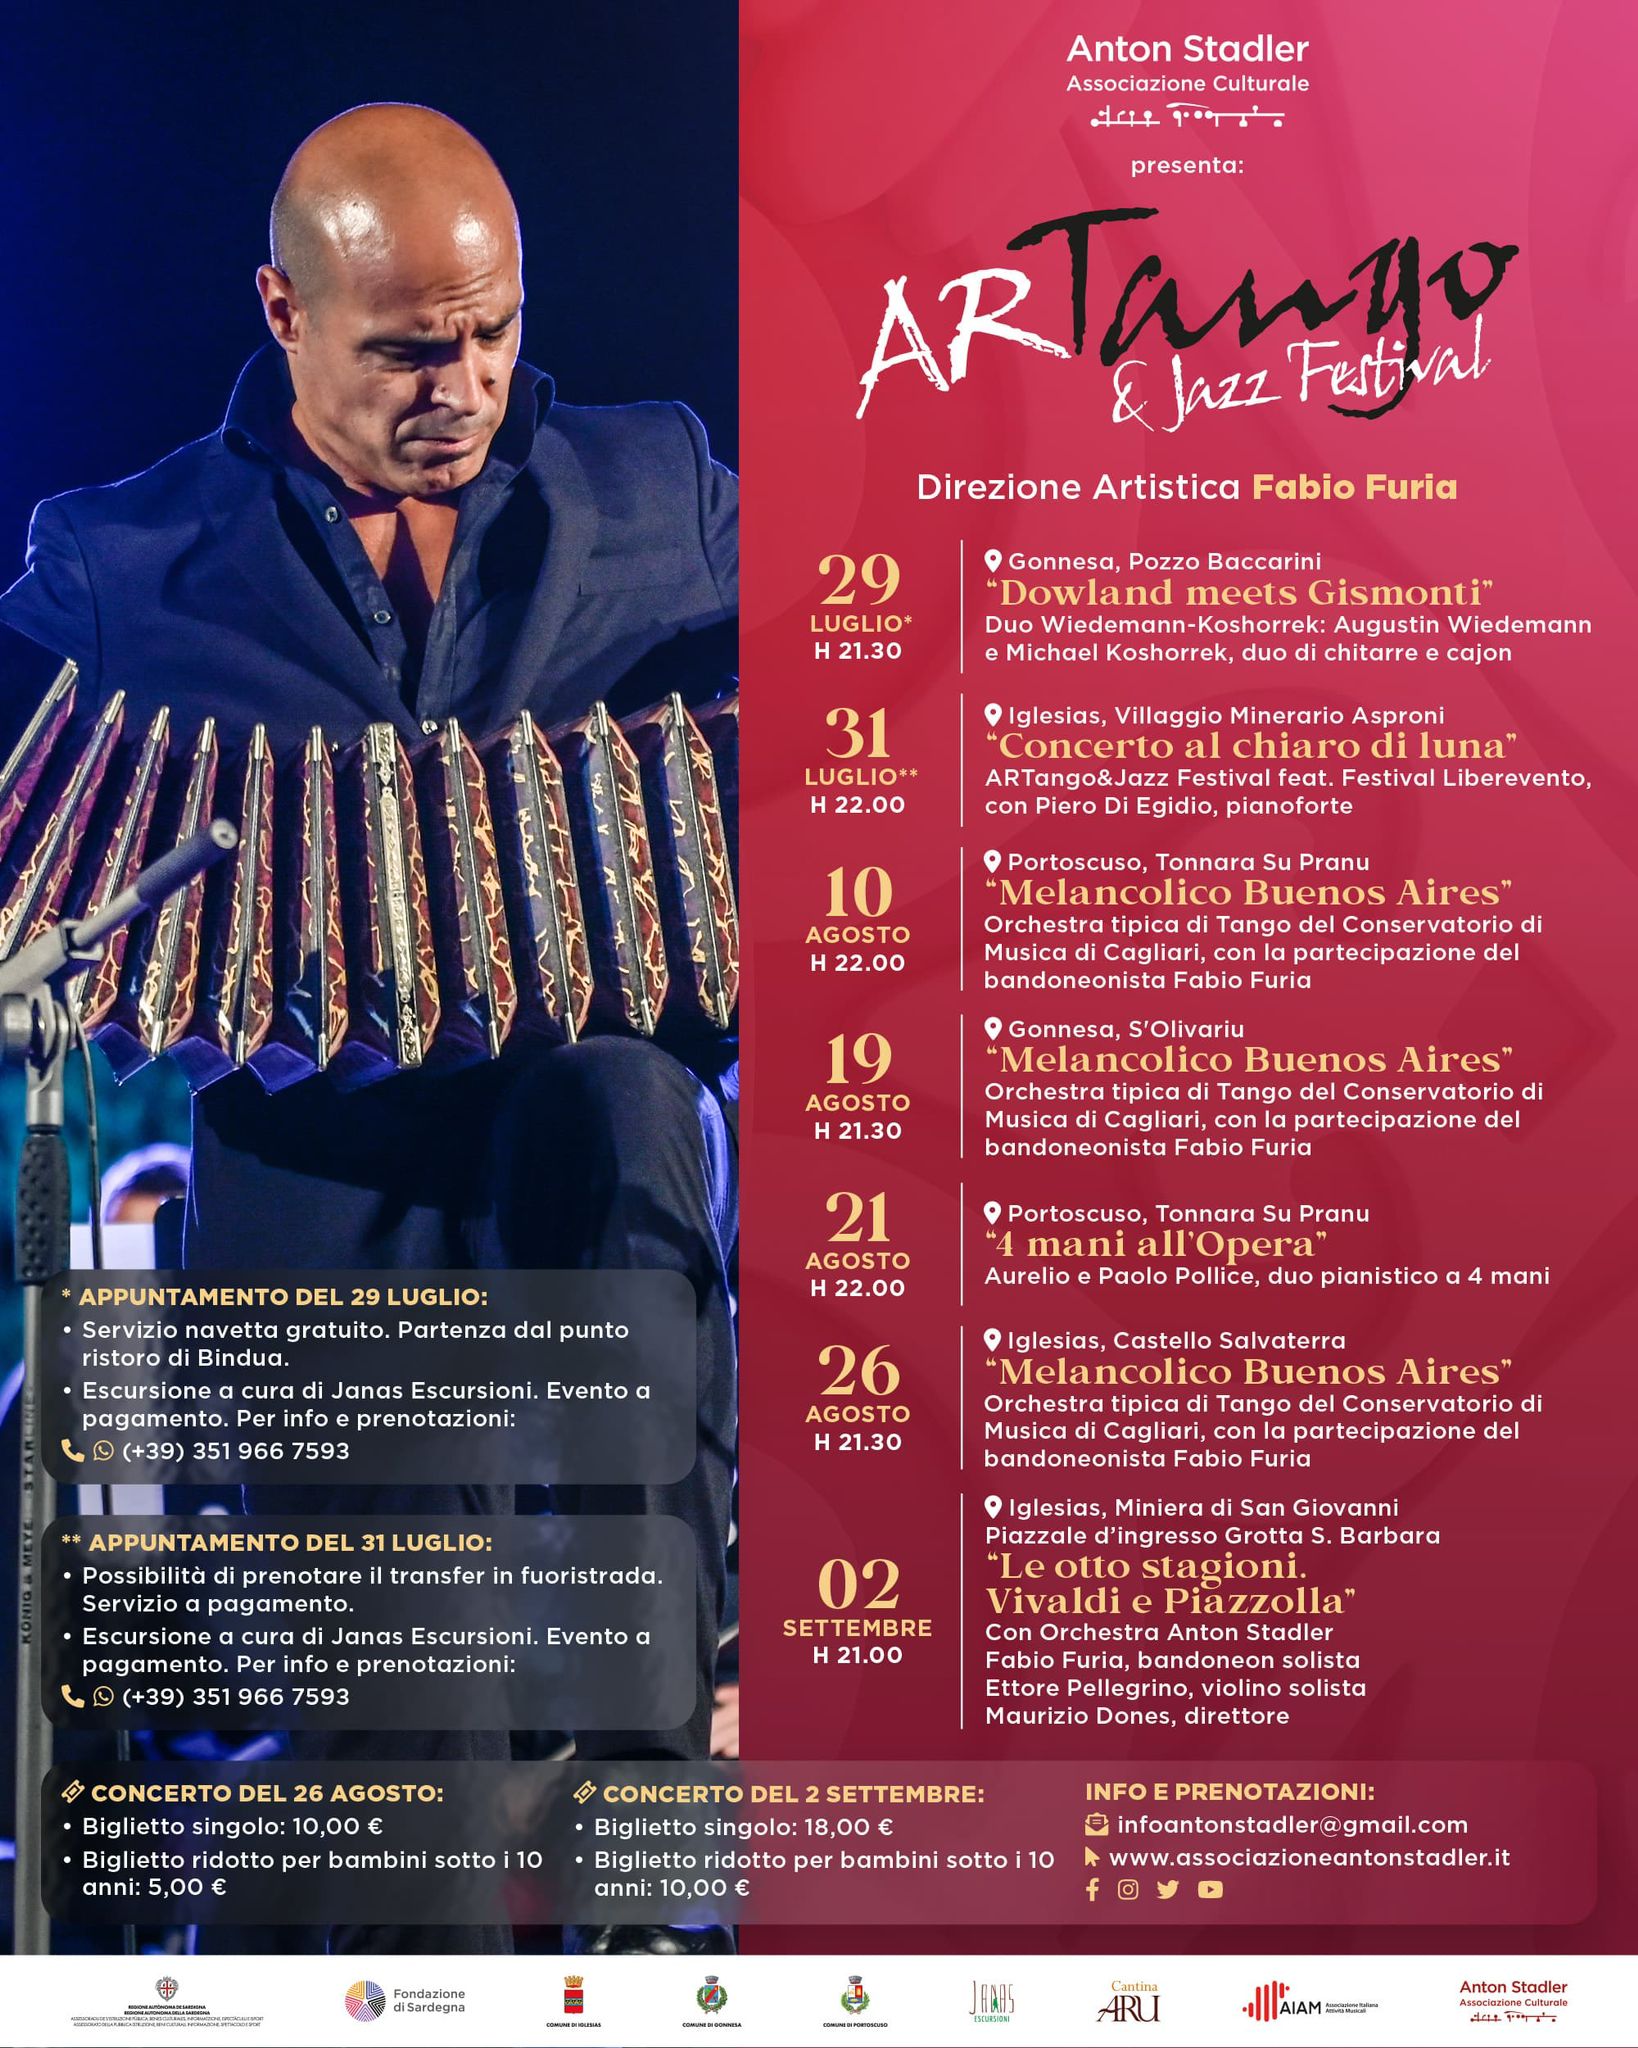 Artango & Jazz Festival